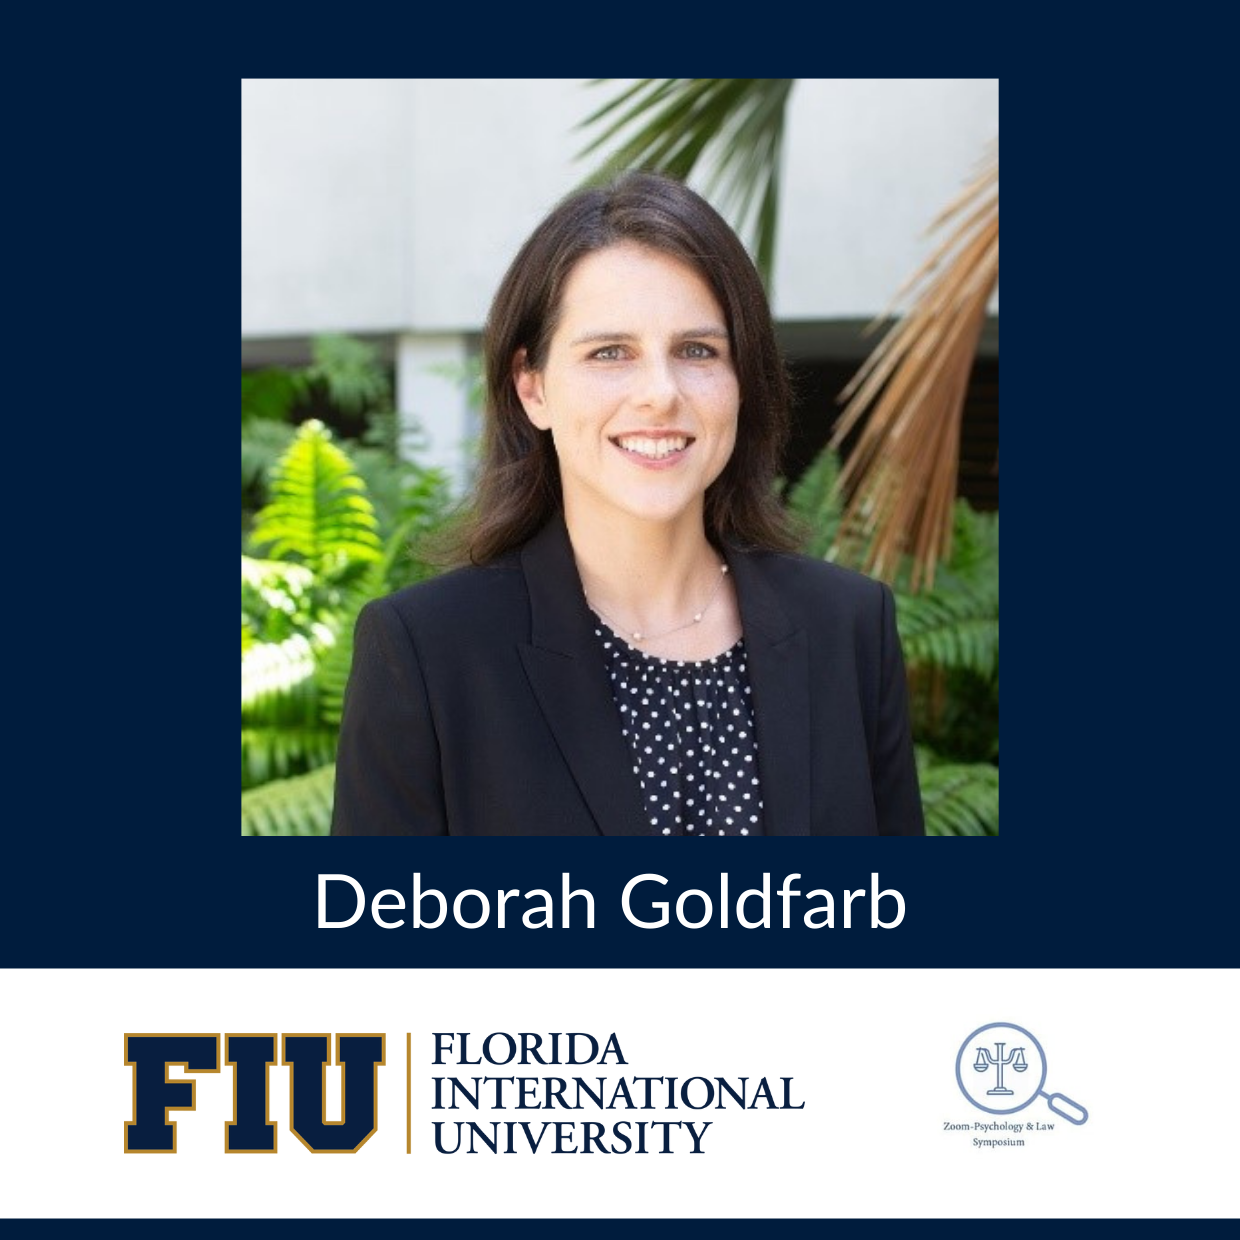 Deborah Goldfarb